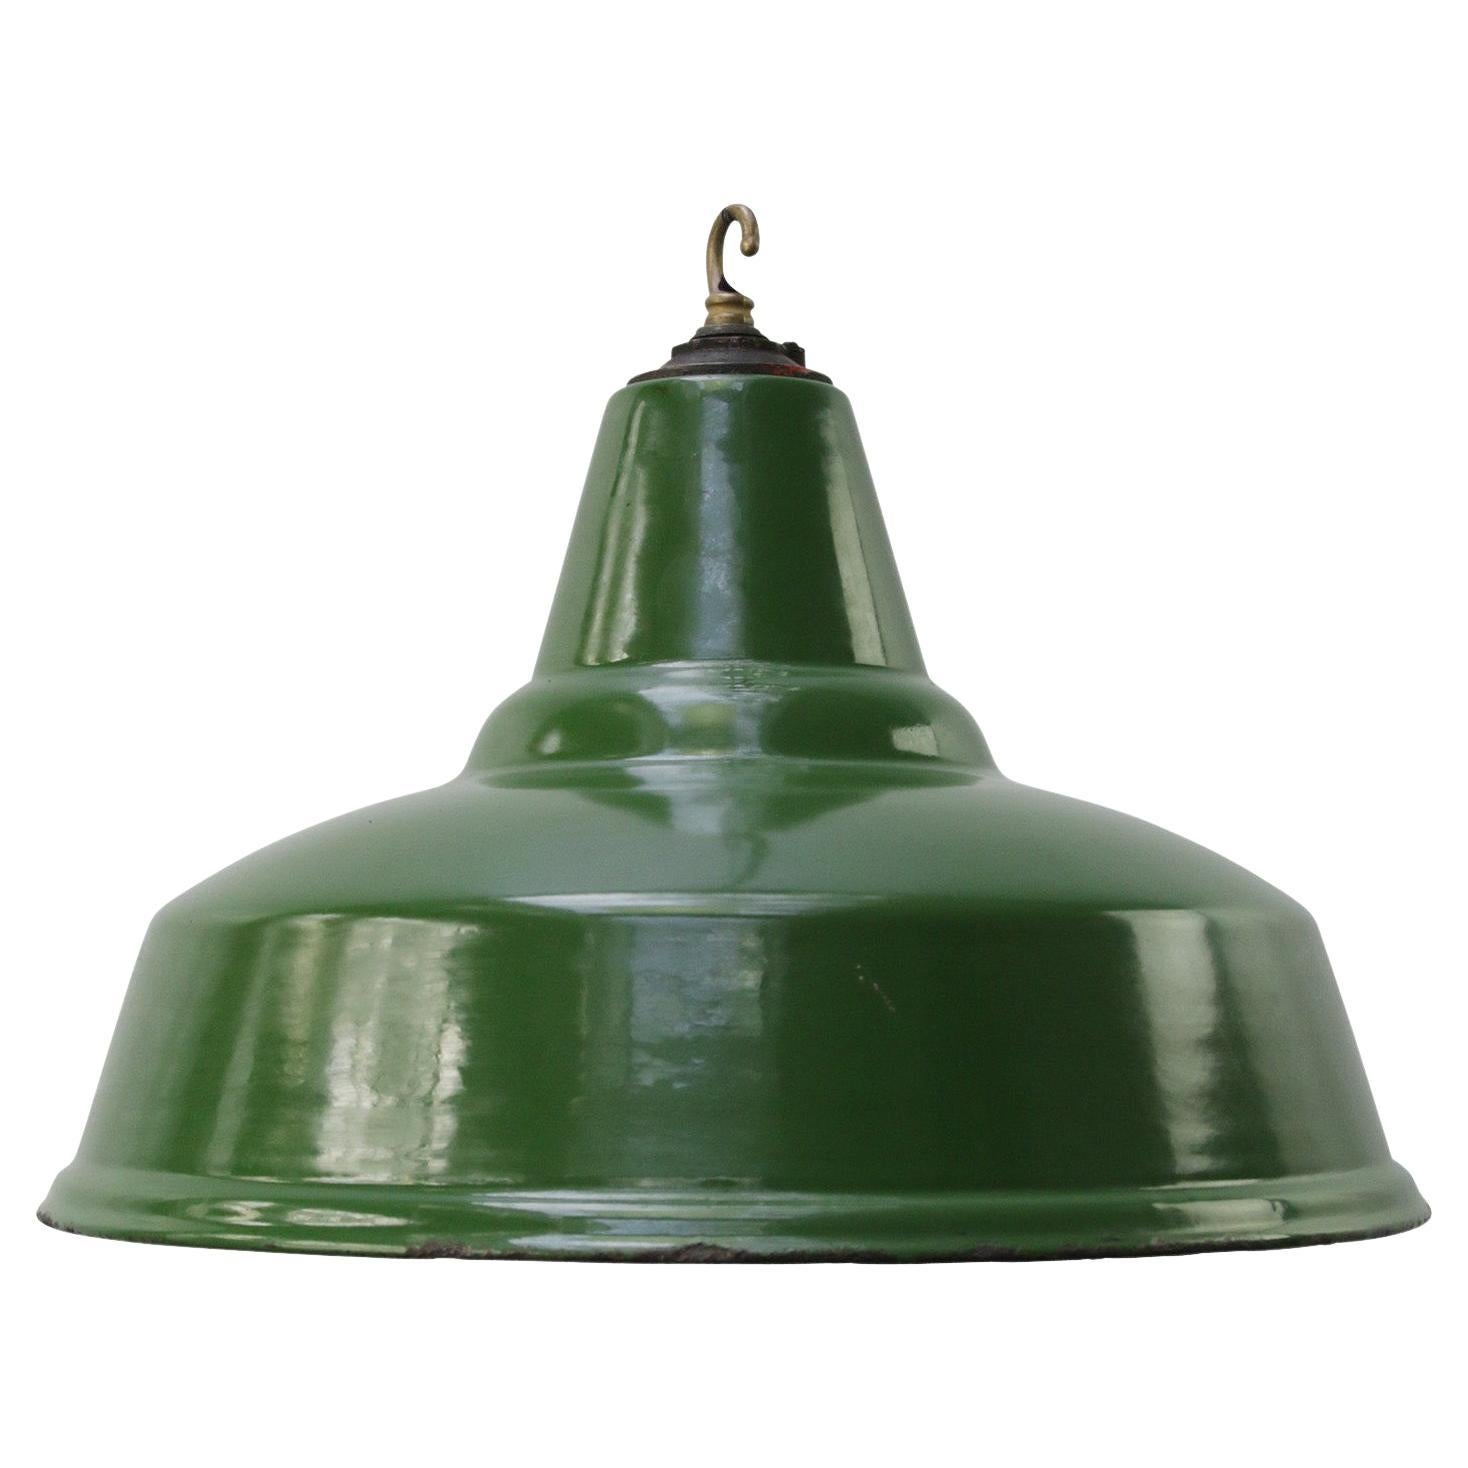 British Green Enamel Vintage Industrial Pendant Lights For Sale